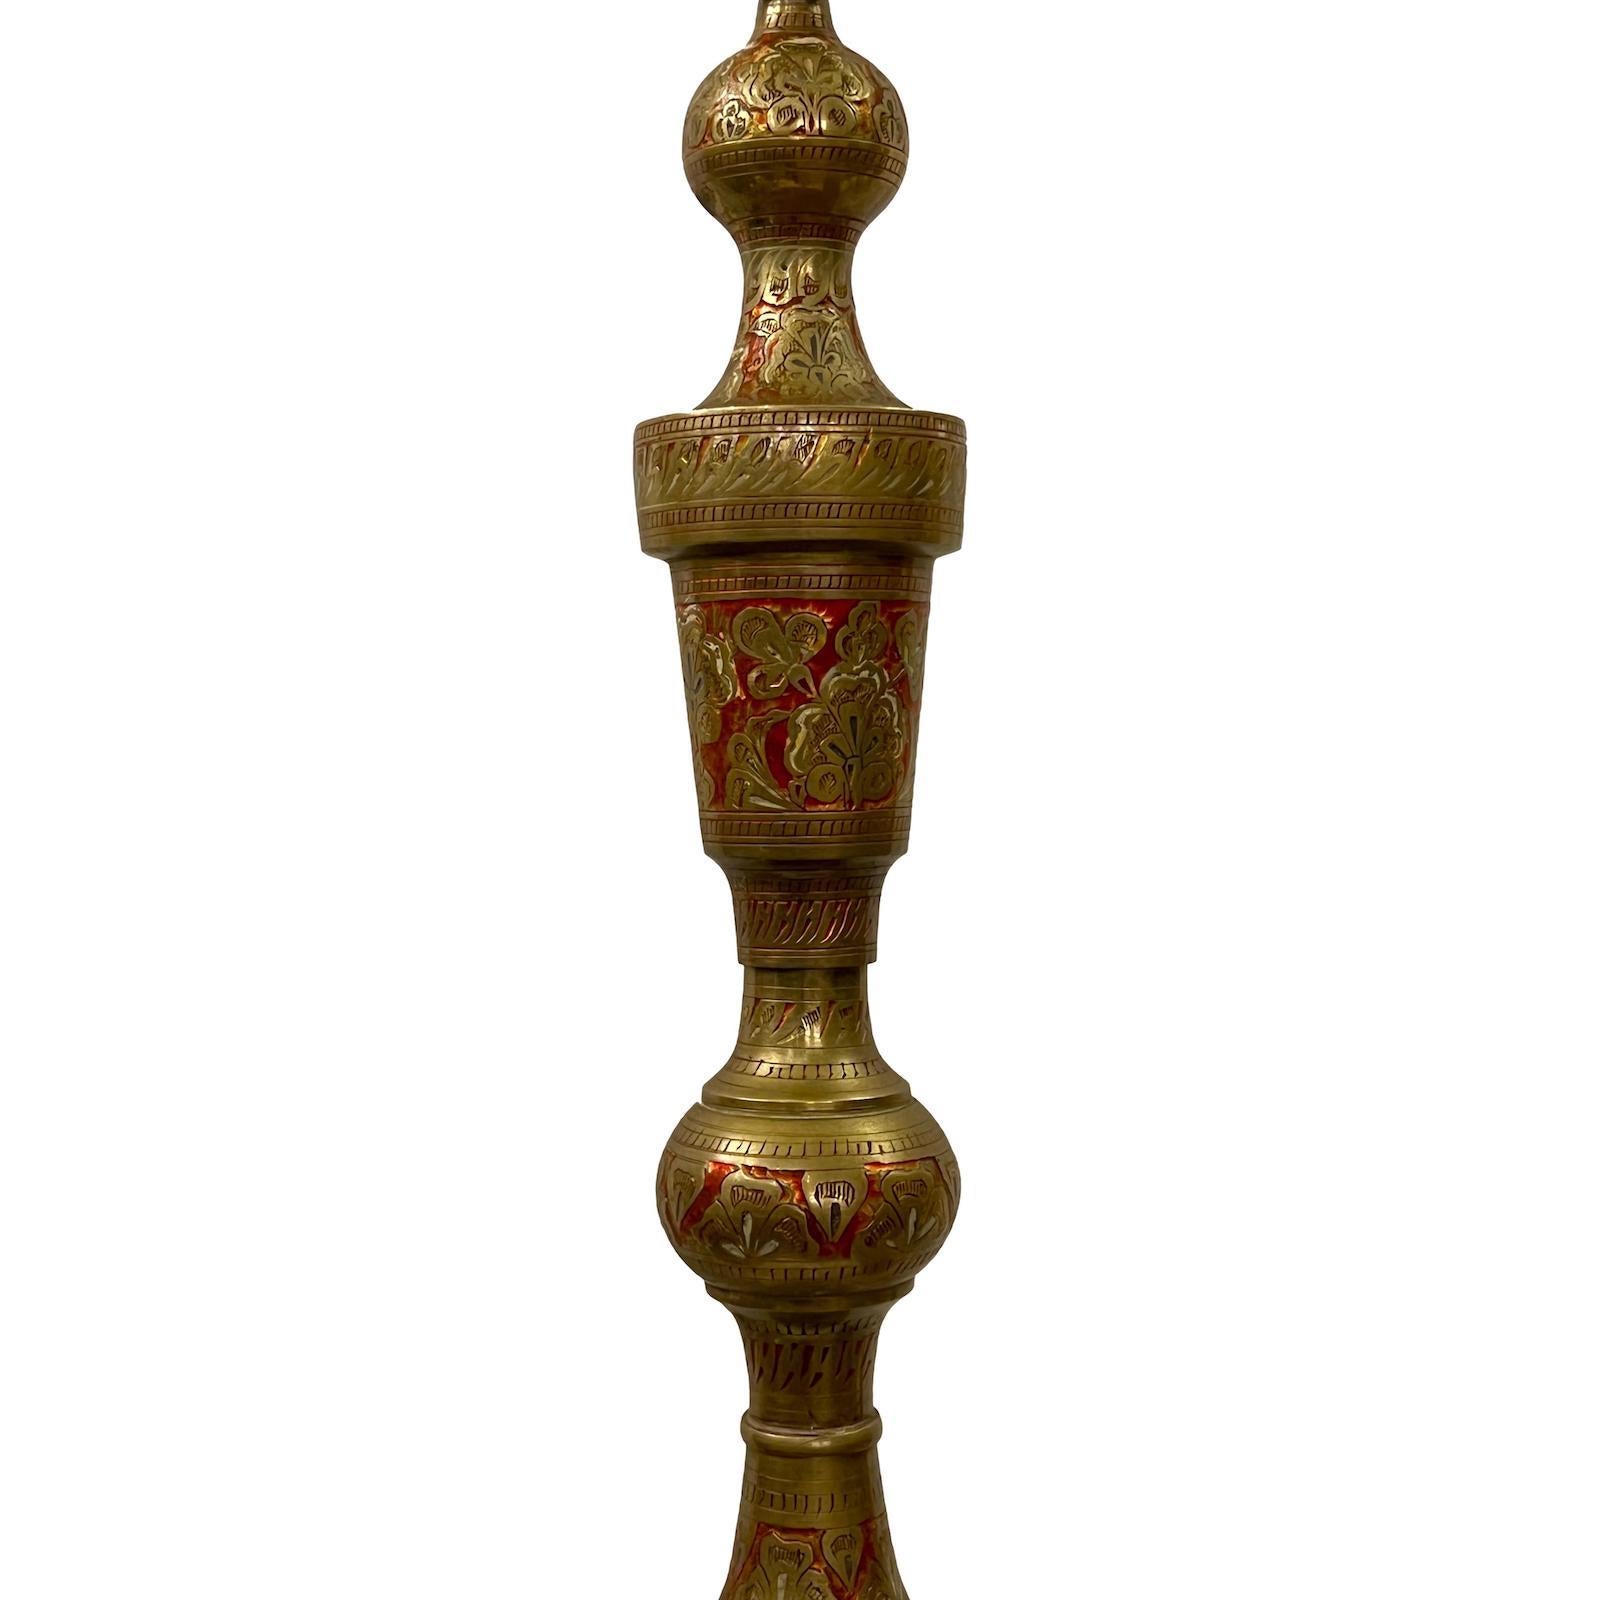 Lampadaire turc en bronze gravé des années 1940 avec décoration émaillée.

Mesures :
Hauteur du corps : 53,5